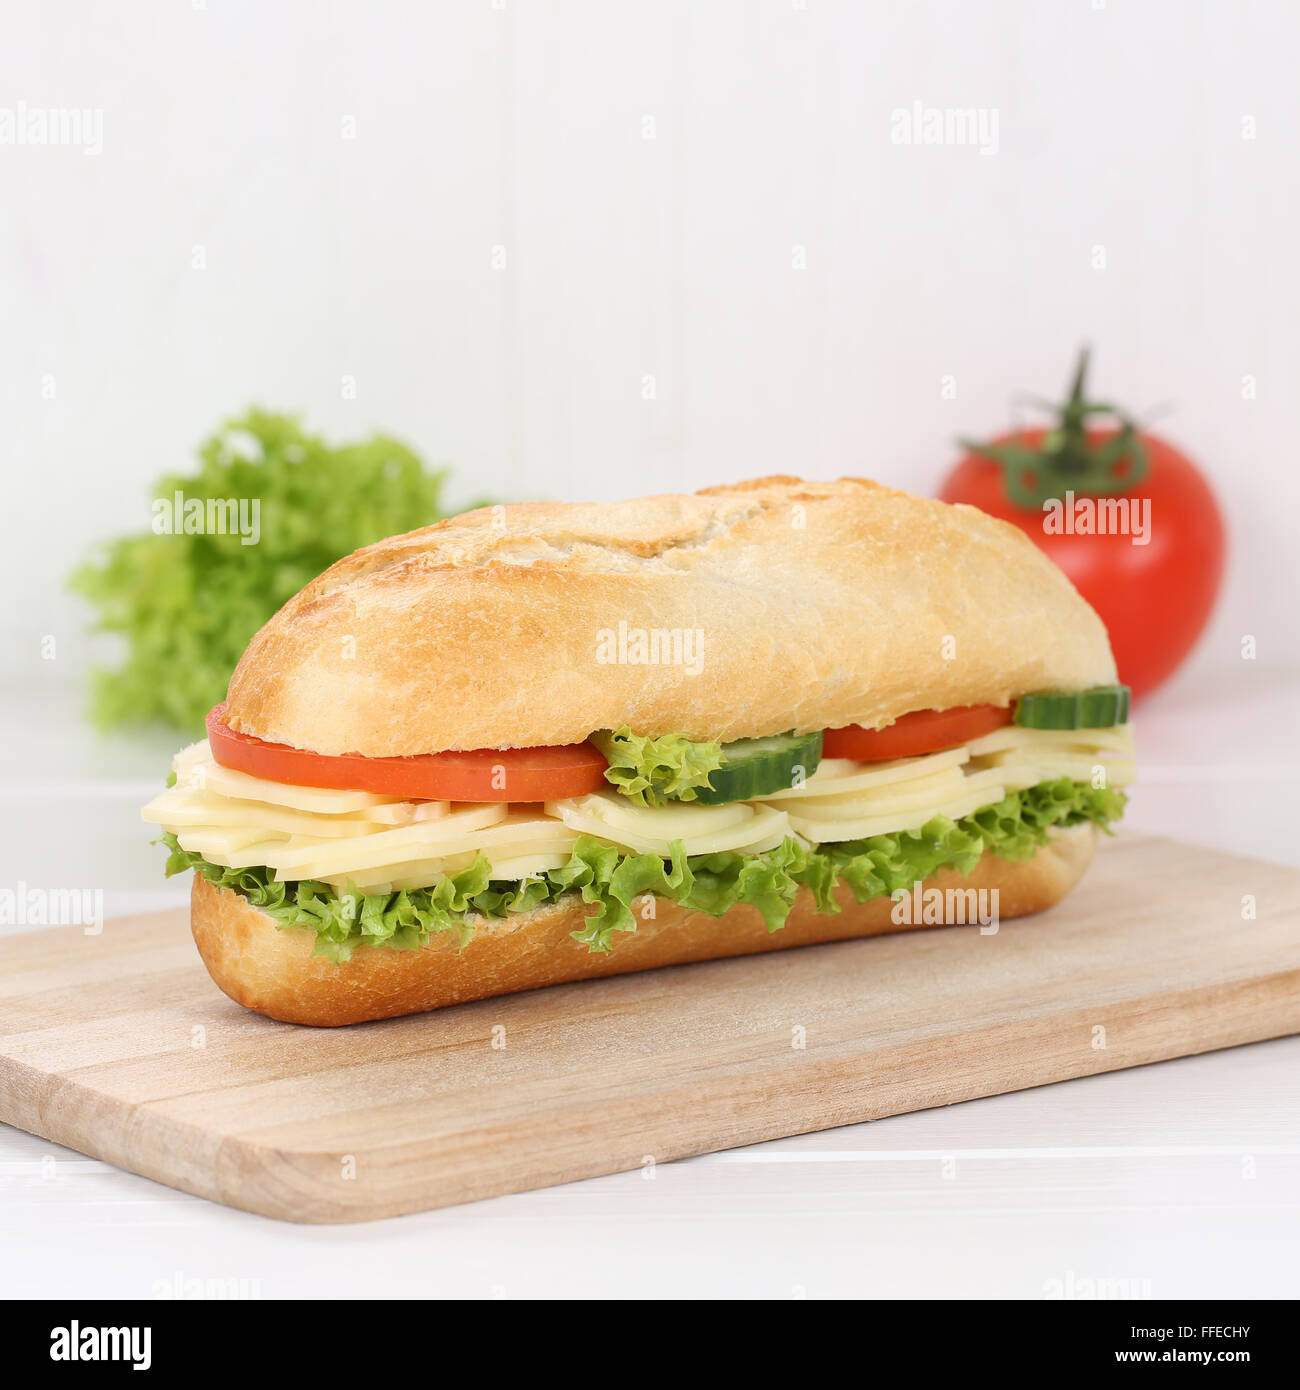 Mangiare sano sub deli sandwich baguette con formaggio, pomodori e lattuga per la prima colazione Foto Stock